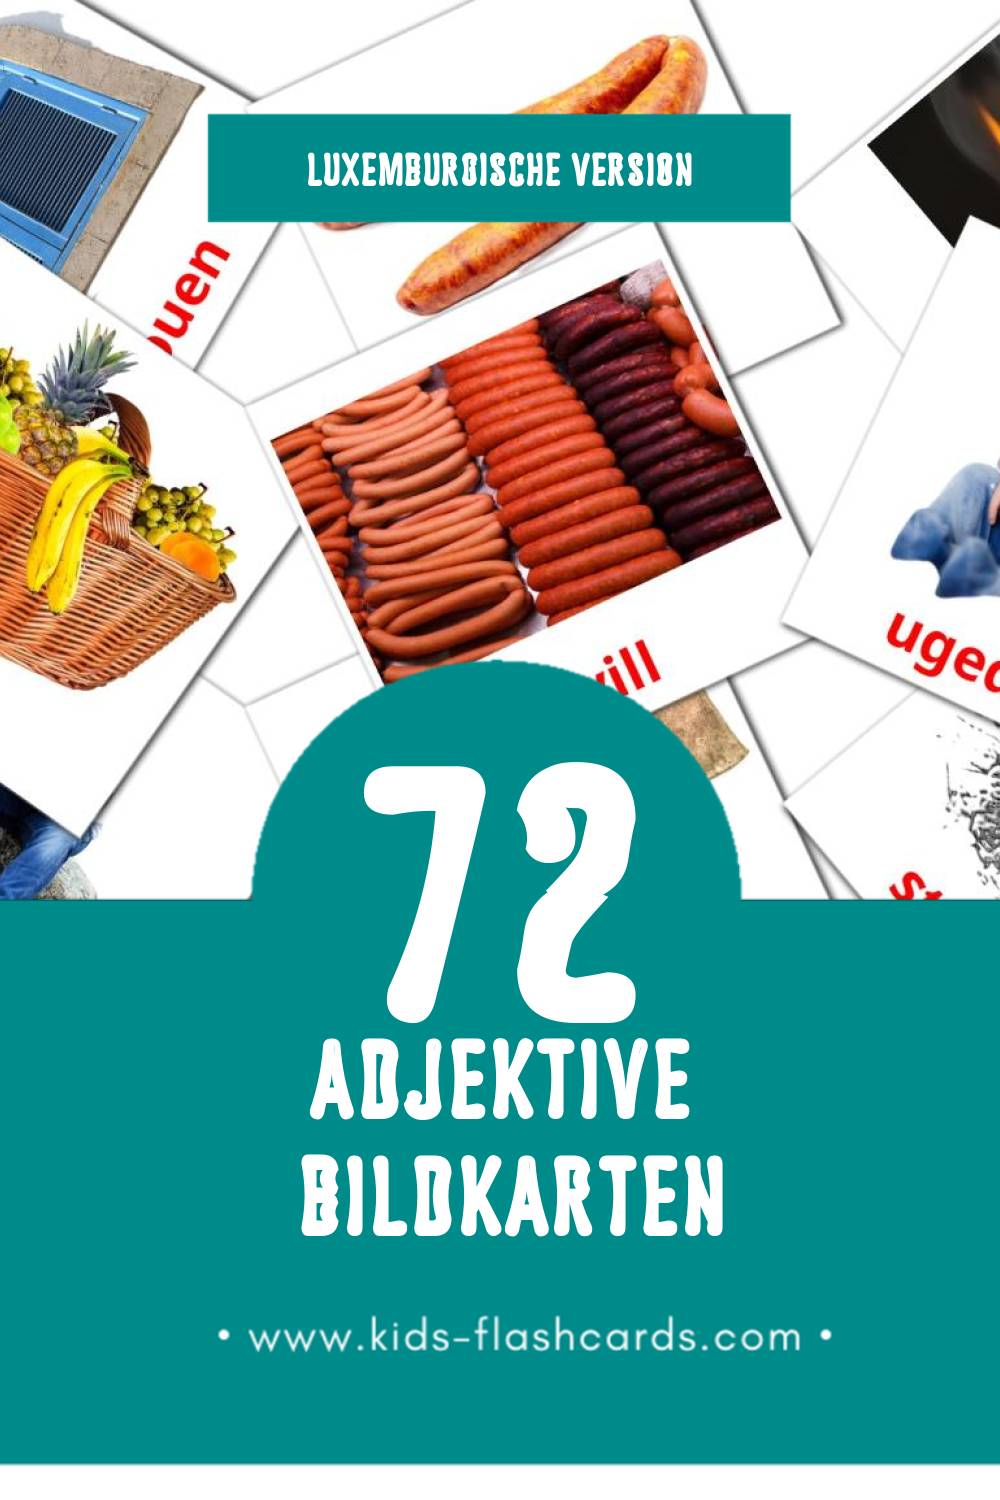 Visual Adjektiven Flashcards für Kleinkinder (72 Karten in Luxemburgisch)